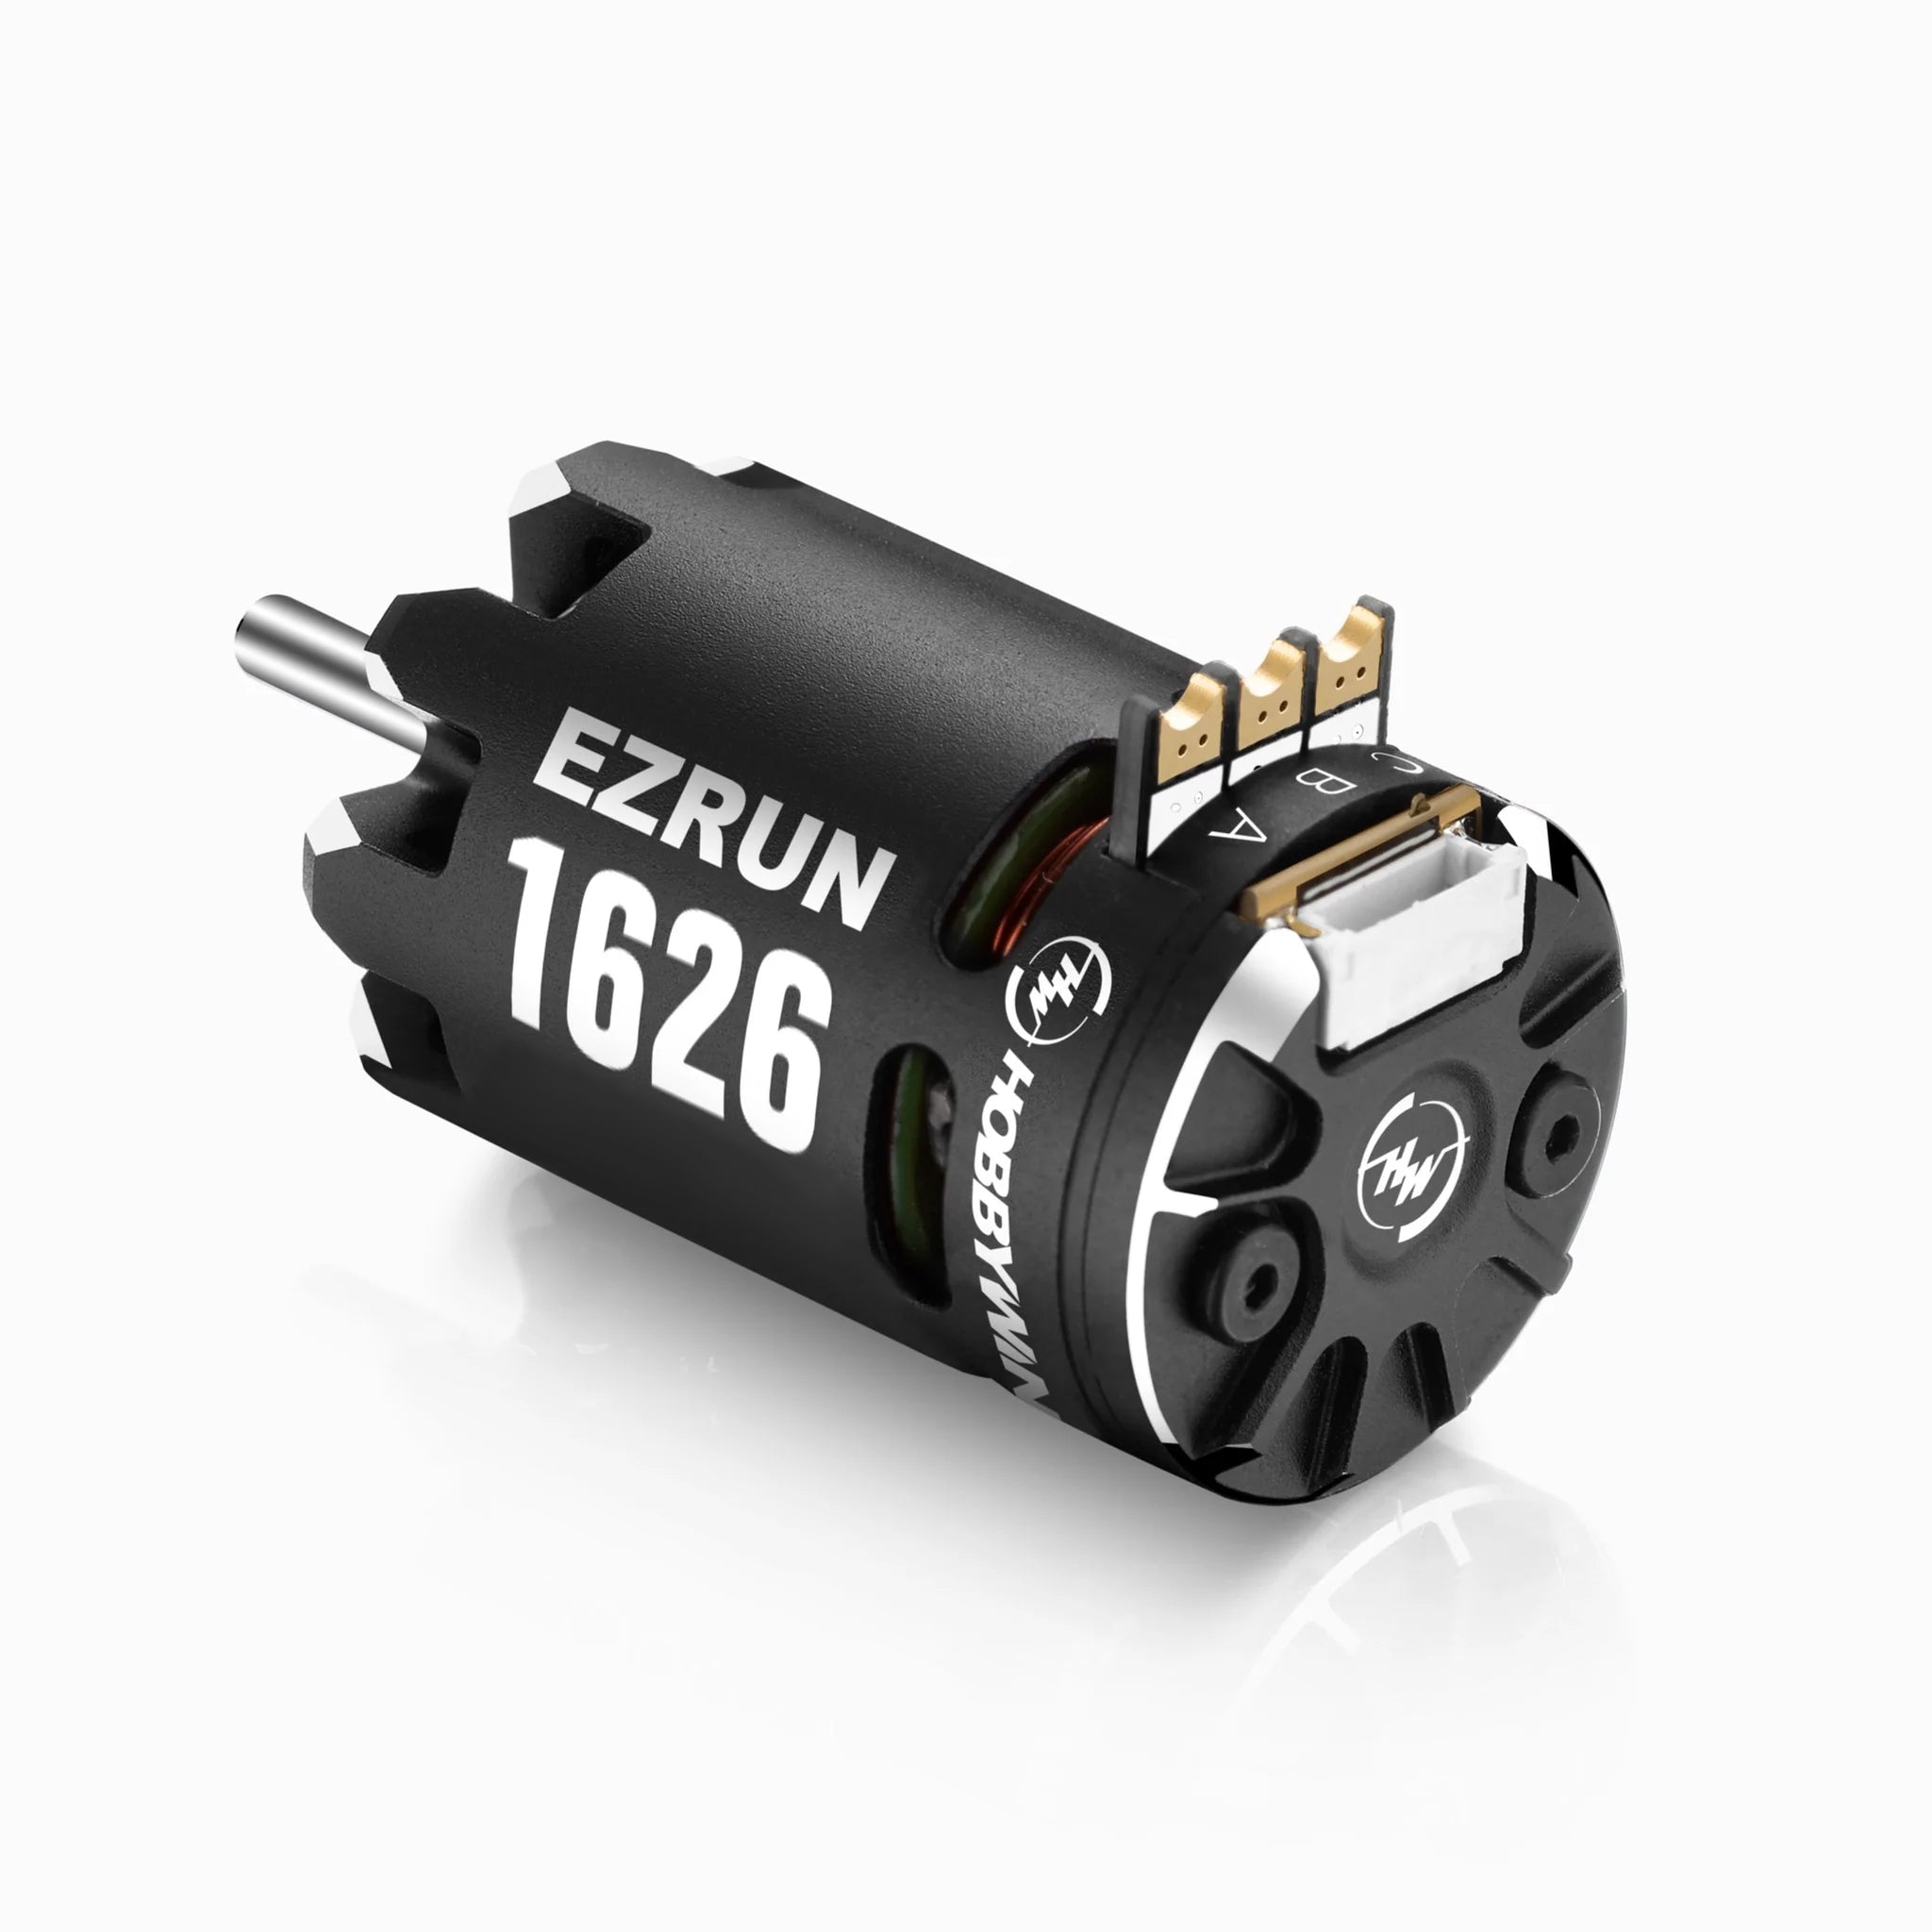 Hobbywing - EZRun 1626 Sensored Brushless Motor (3500Kv)